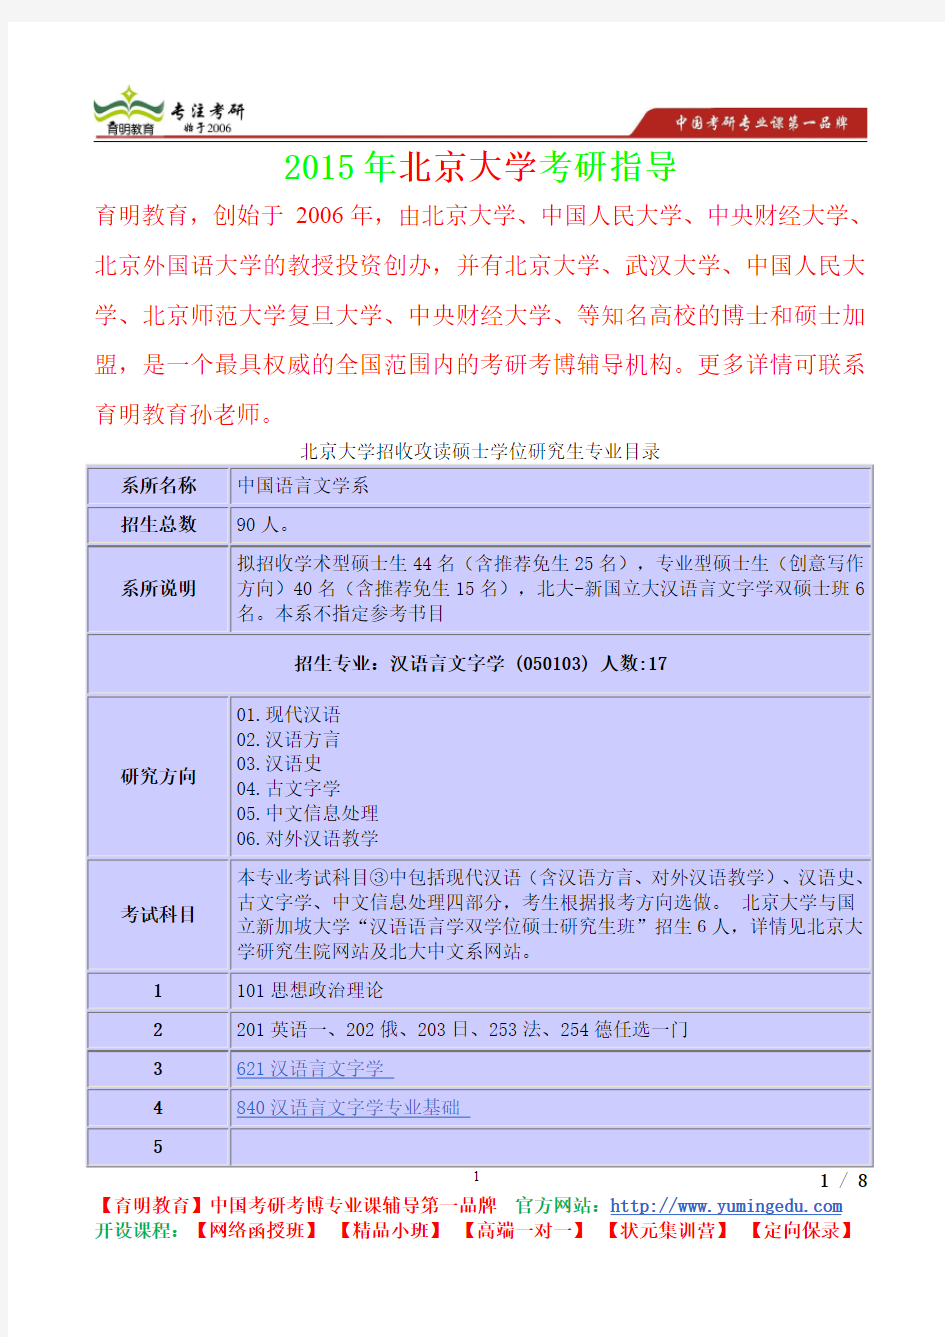 2015年北京大学汉语言文字真题解析,考研心态,考研真题,考研经验